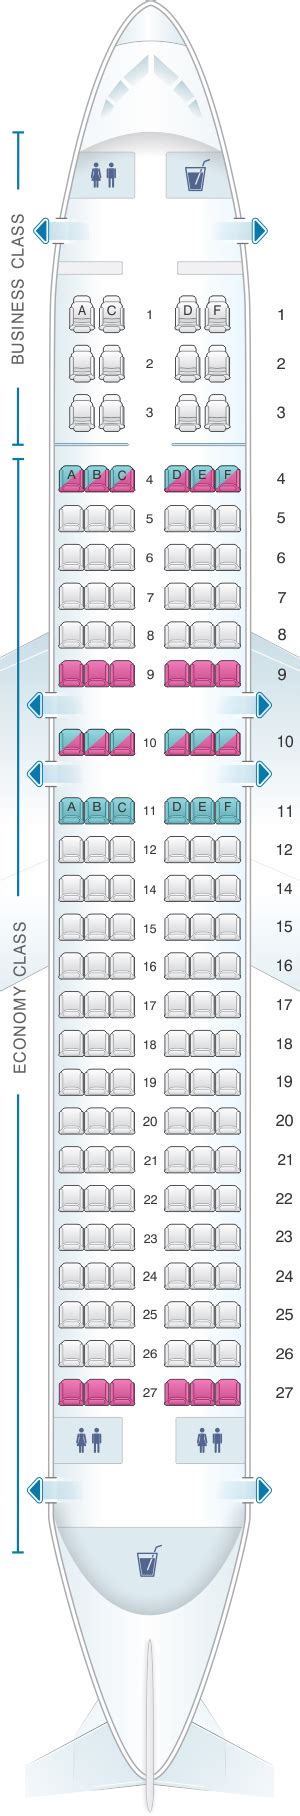 Seat Map Avianca Airbus A320 Seatmaestro